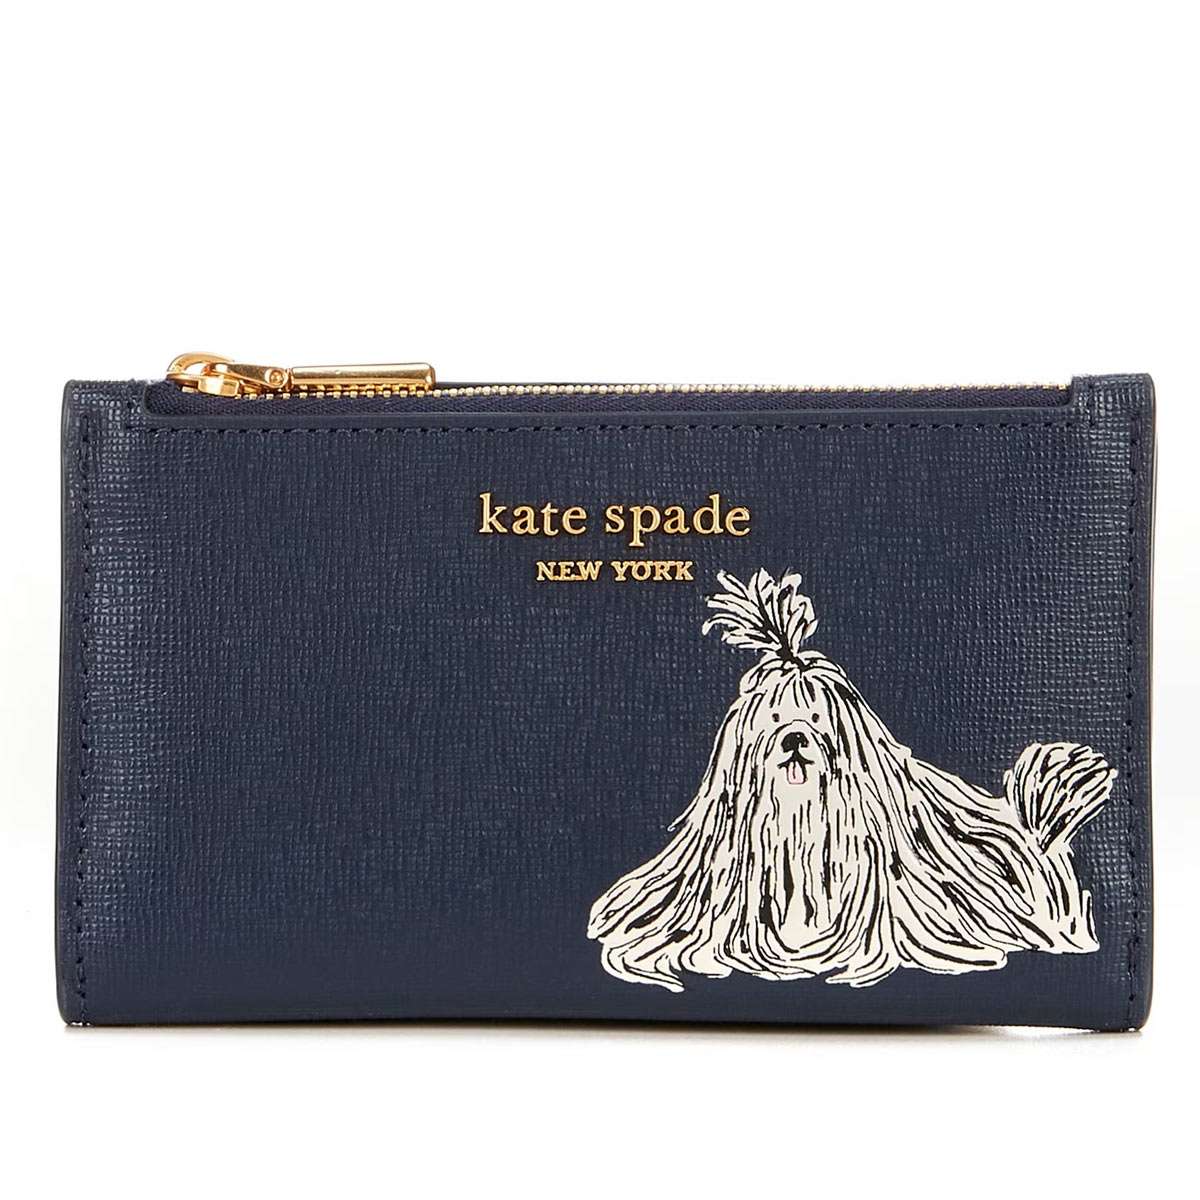 ケイト・スペード ニューヨーク 二つ折り財布 レディース ケイトスペード 財布 二つ折り財布 レディース ブランド 革 レザー 小銭入れあり カード入れ 多い アウトレットではない正規品 Kate Spade